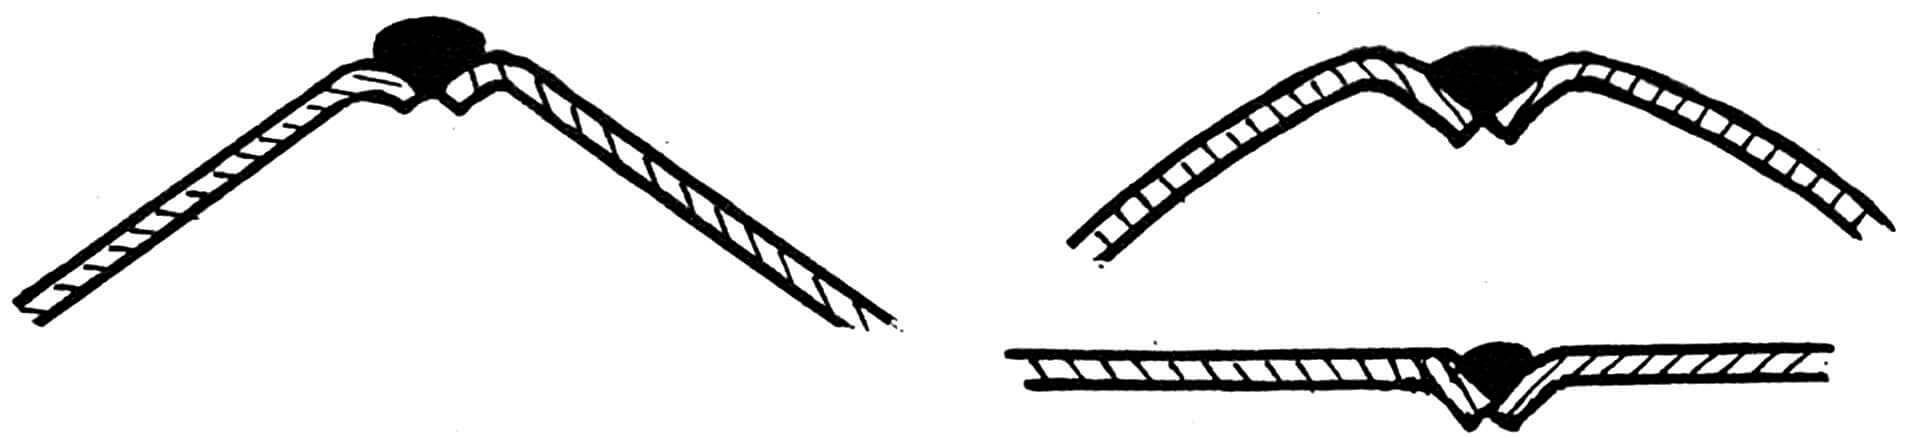 Рис. 3. Схема наиболее рациональных сварных швов, применяемых при сборке корпуса-монокока.